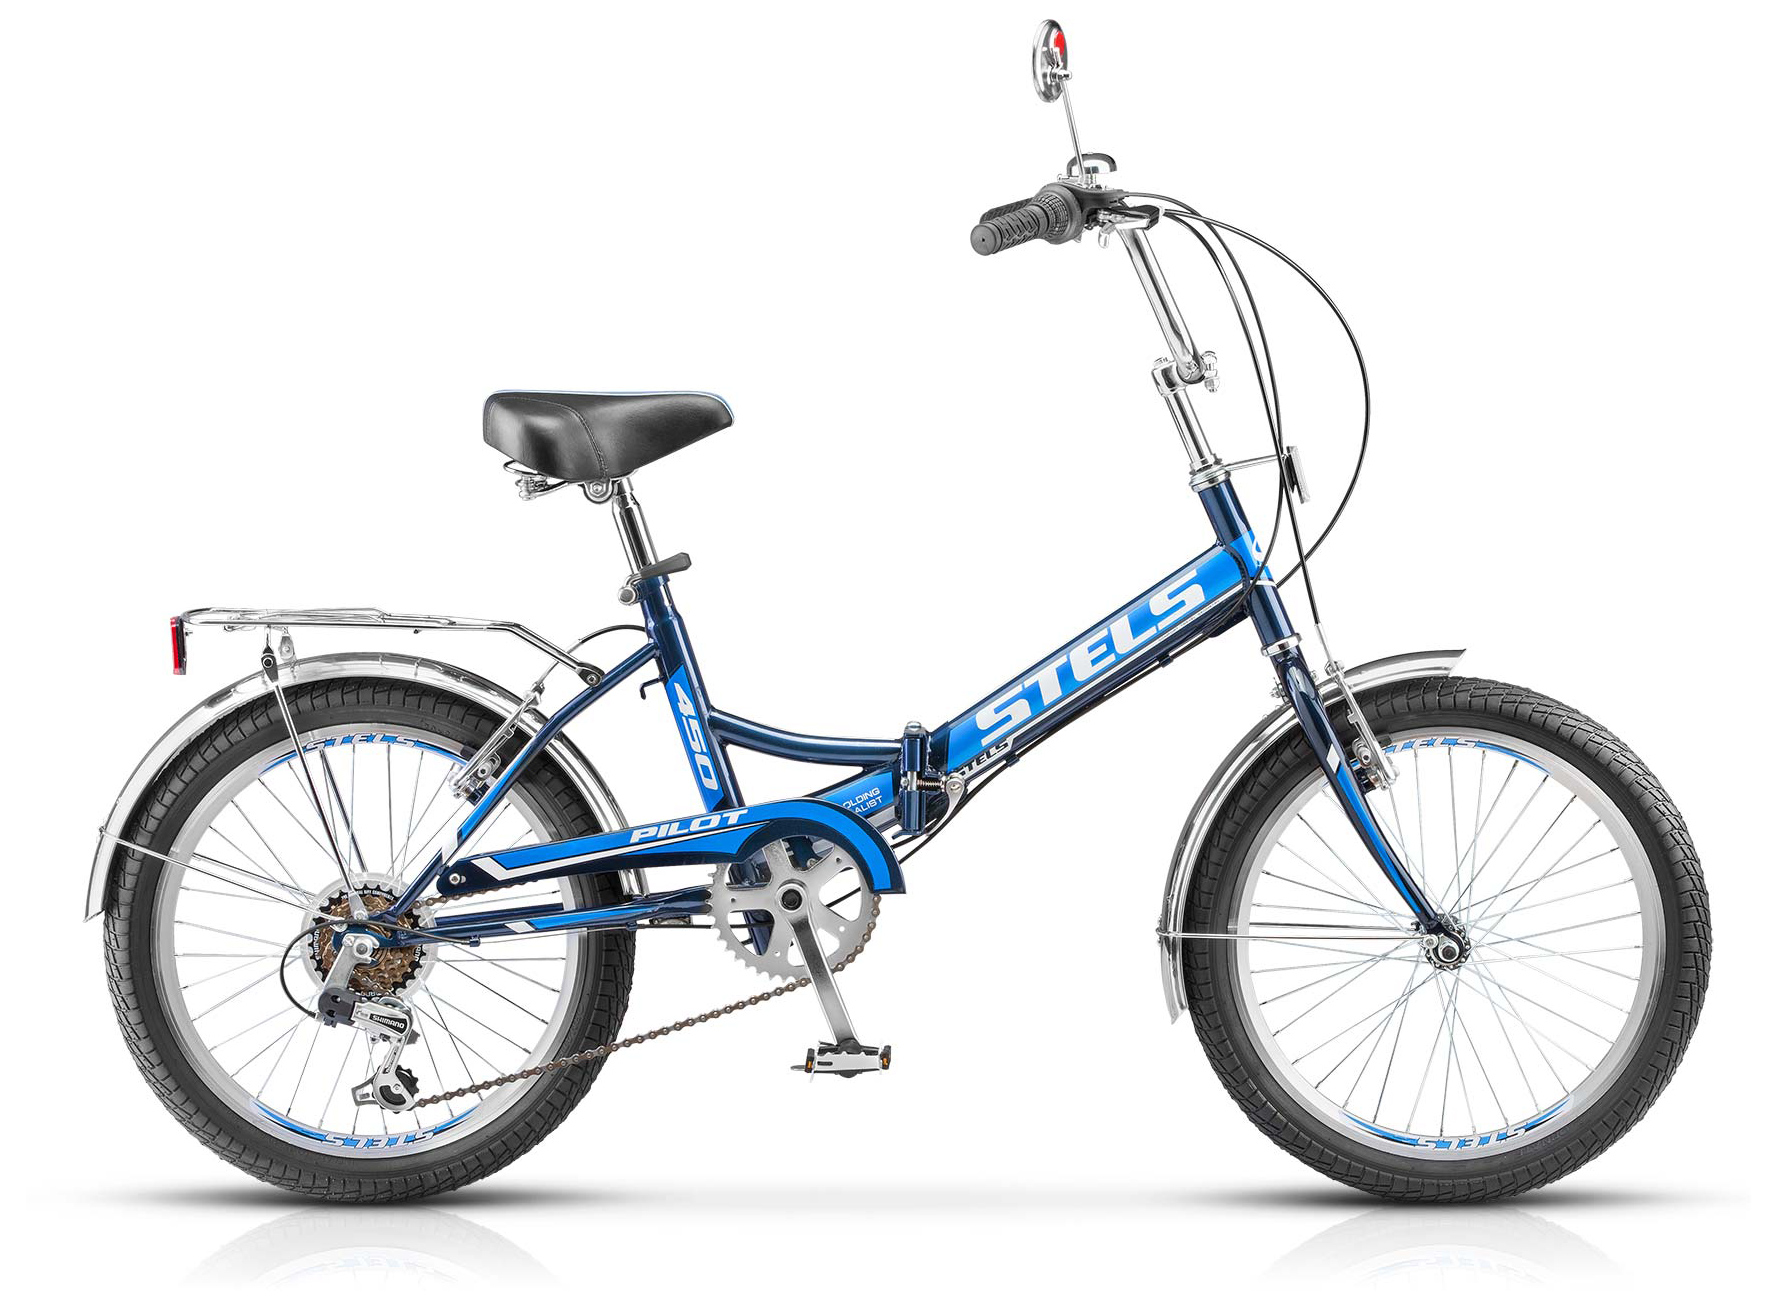  Отзывы о Складном велосипеде Stels Pilot 450 20" (Z011) 2019